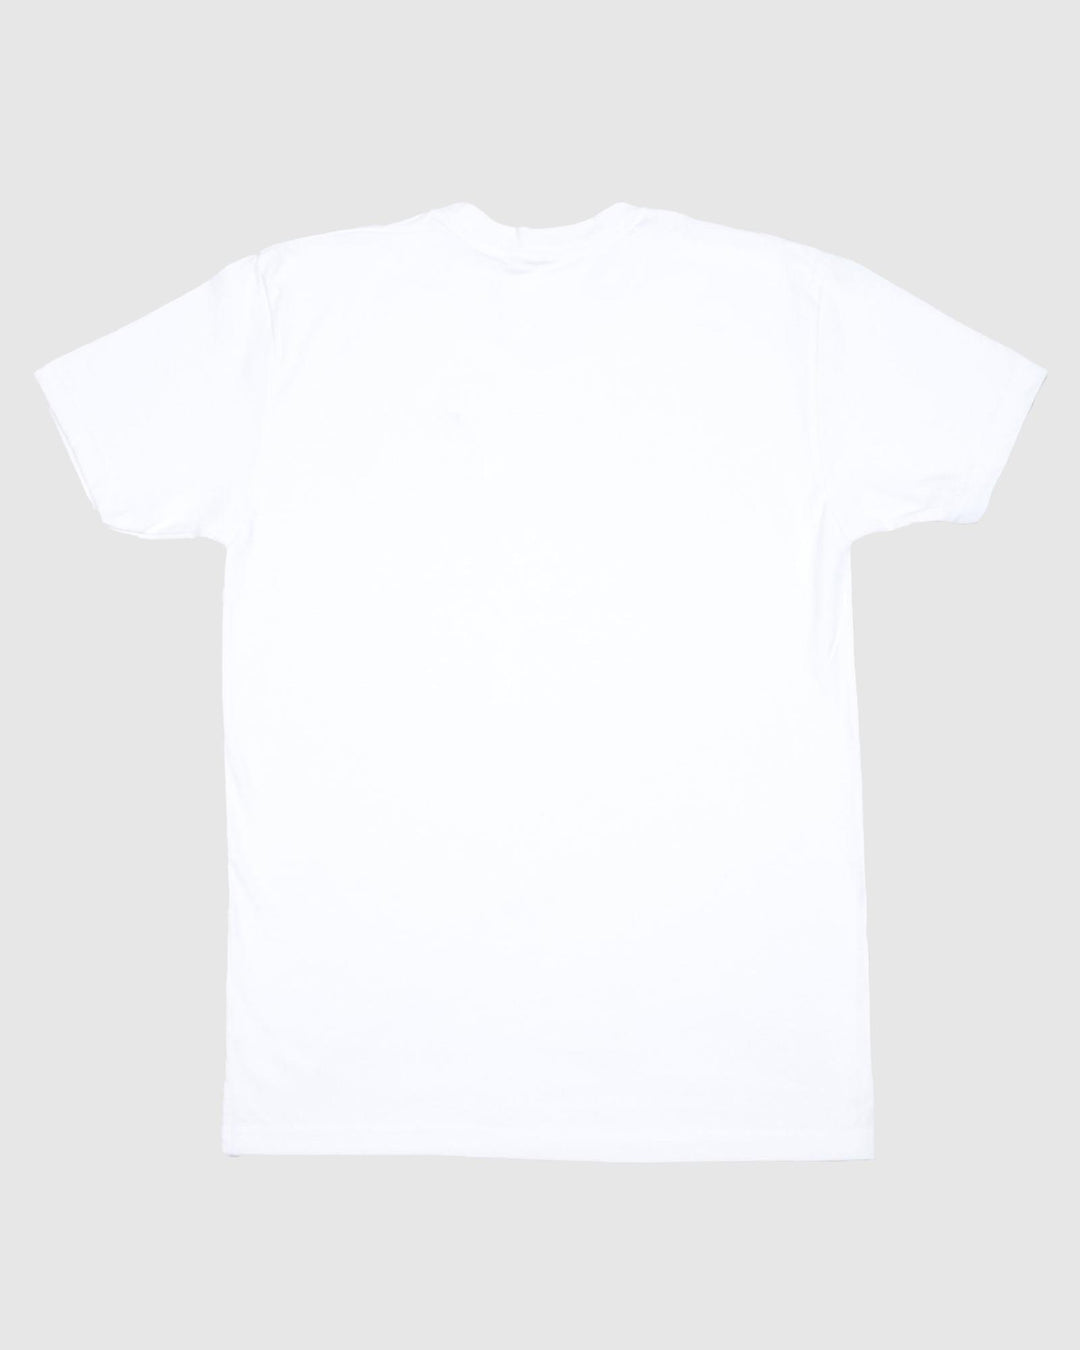 Back of white t-shirt